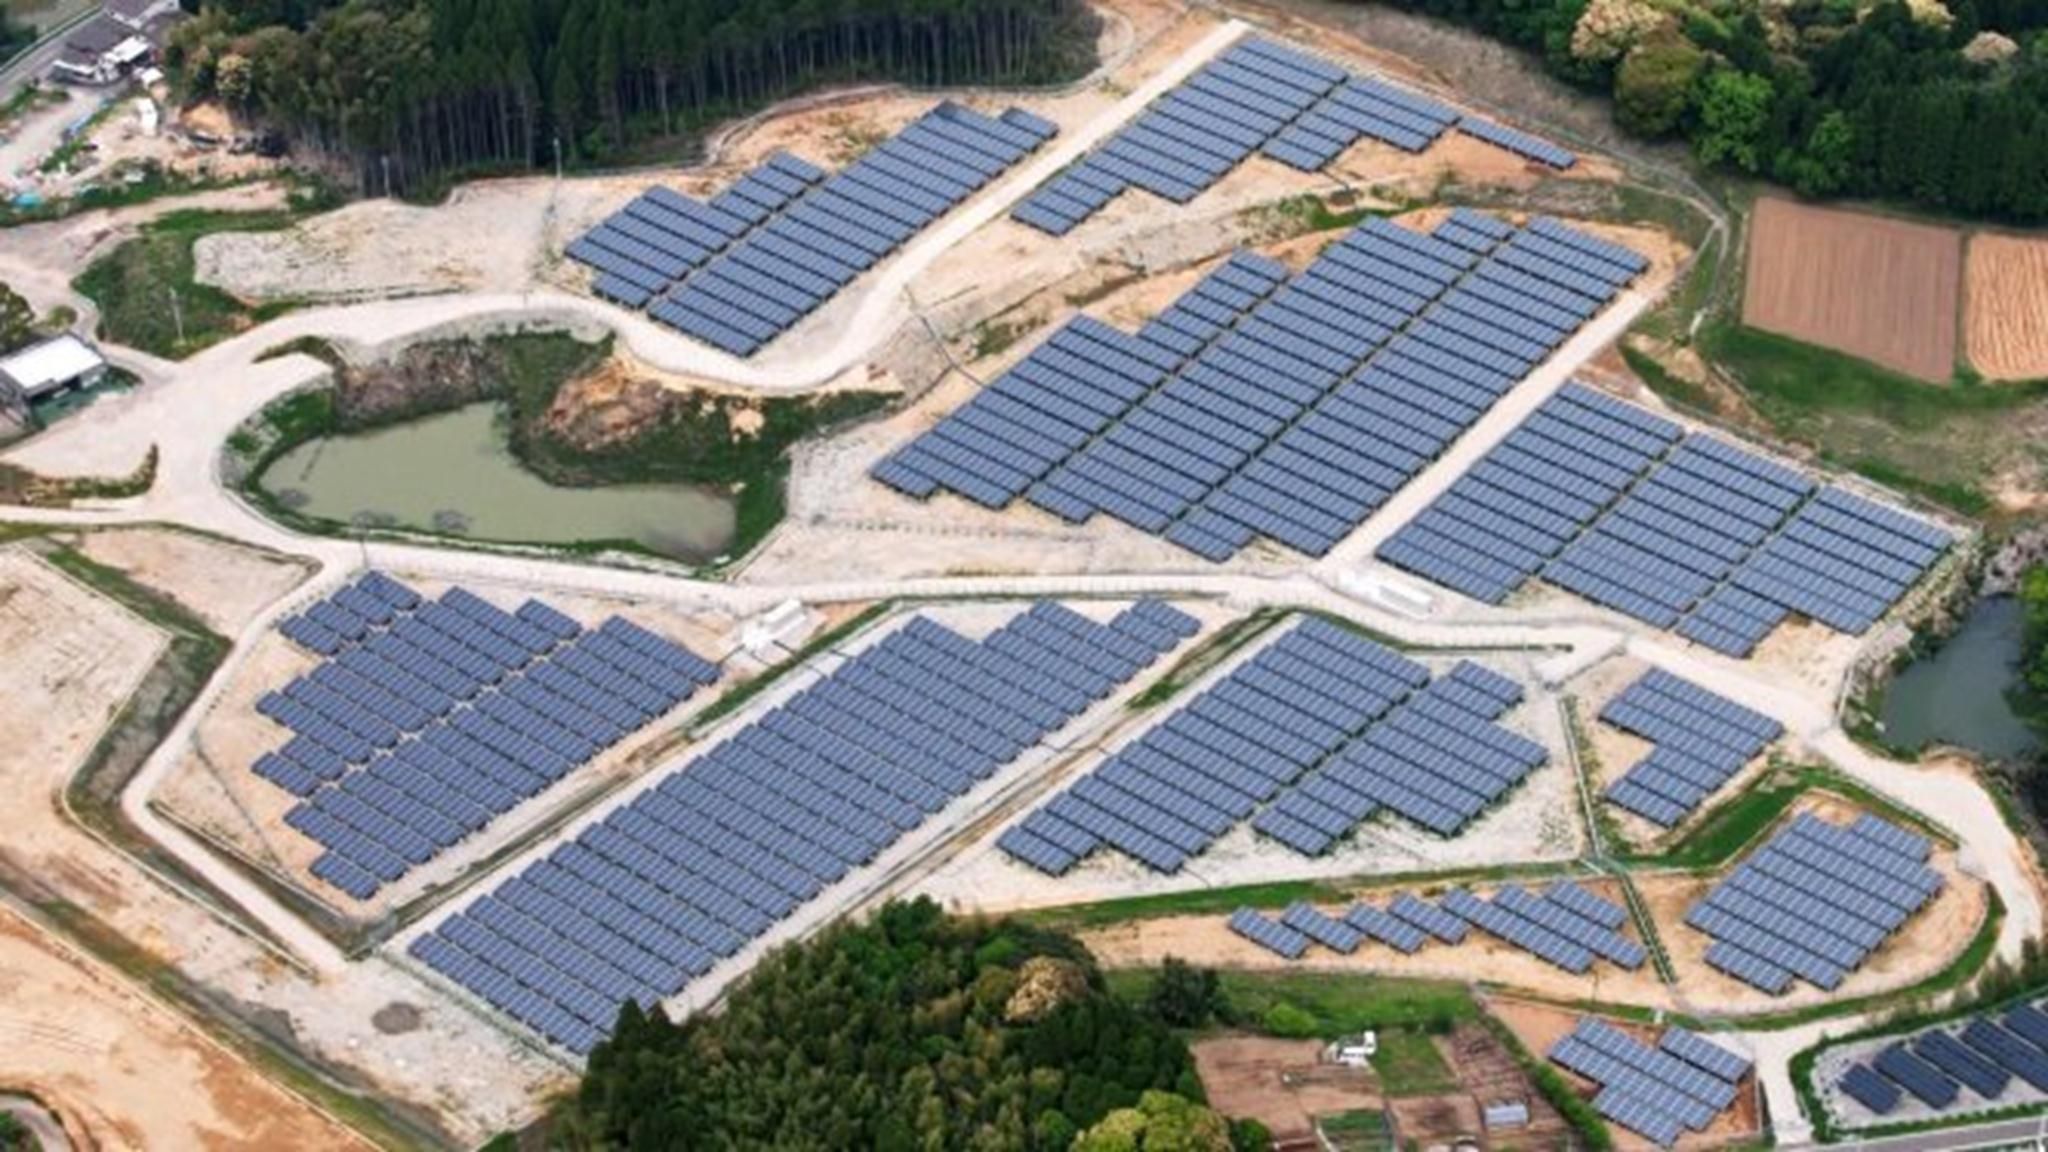 Mô hình dự án điện mặt trời trên sân golf của Tập đoàn Kyocera - Ảnh: Kyocera